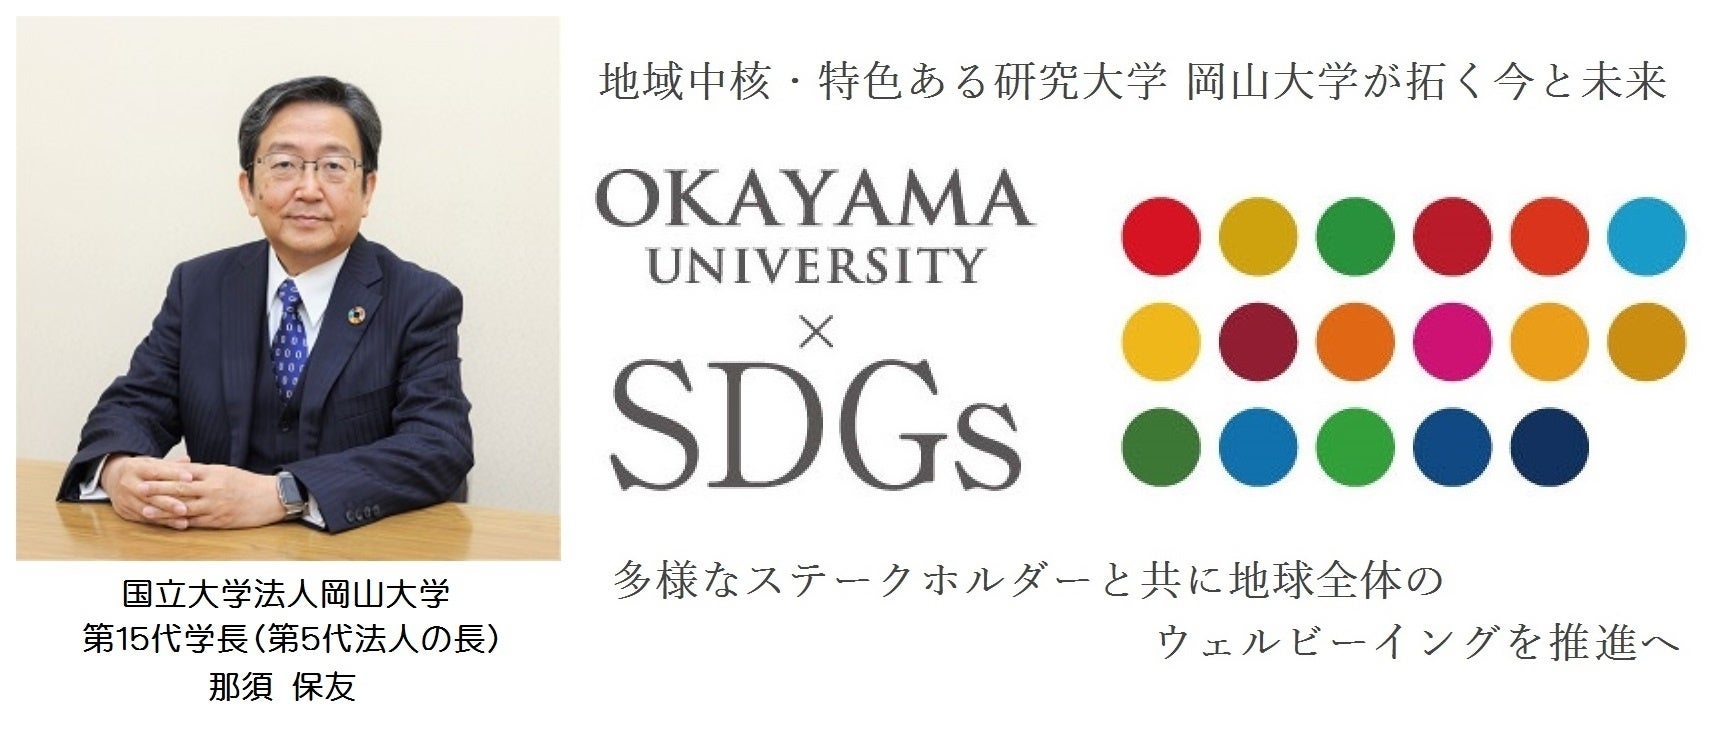 【岡山大学】平成30年7月豪雨災害から5年、復興を支えた岡山大学の総合知と災害レジリエンスをテーマにしたシンポジウムを開催